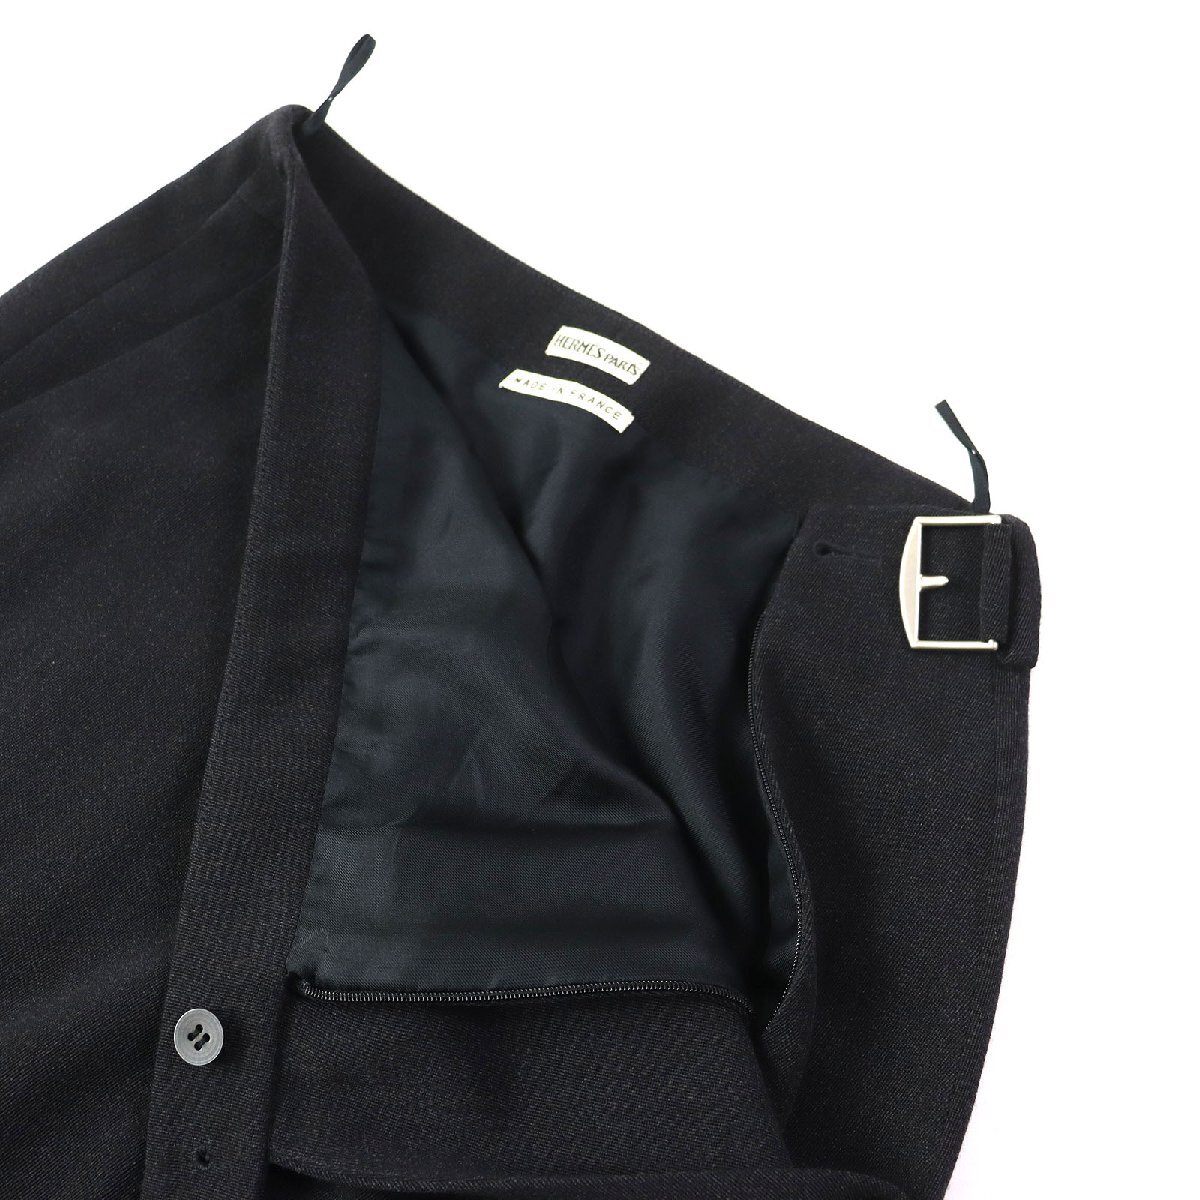  превосходный товар ^HERMES Hermes шерсть 100% Margiela период подкладка шелк 100% боковой ремень имеется узкая юбка темно-серый 34. производства стандартный товар 